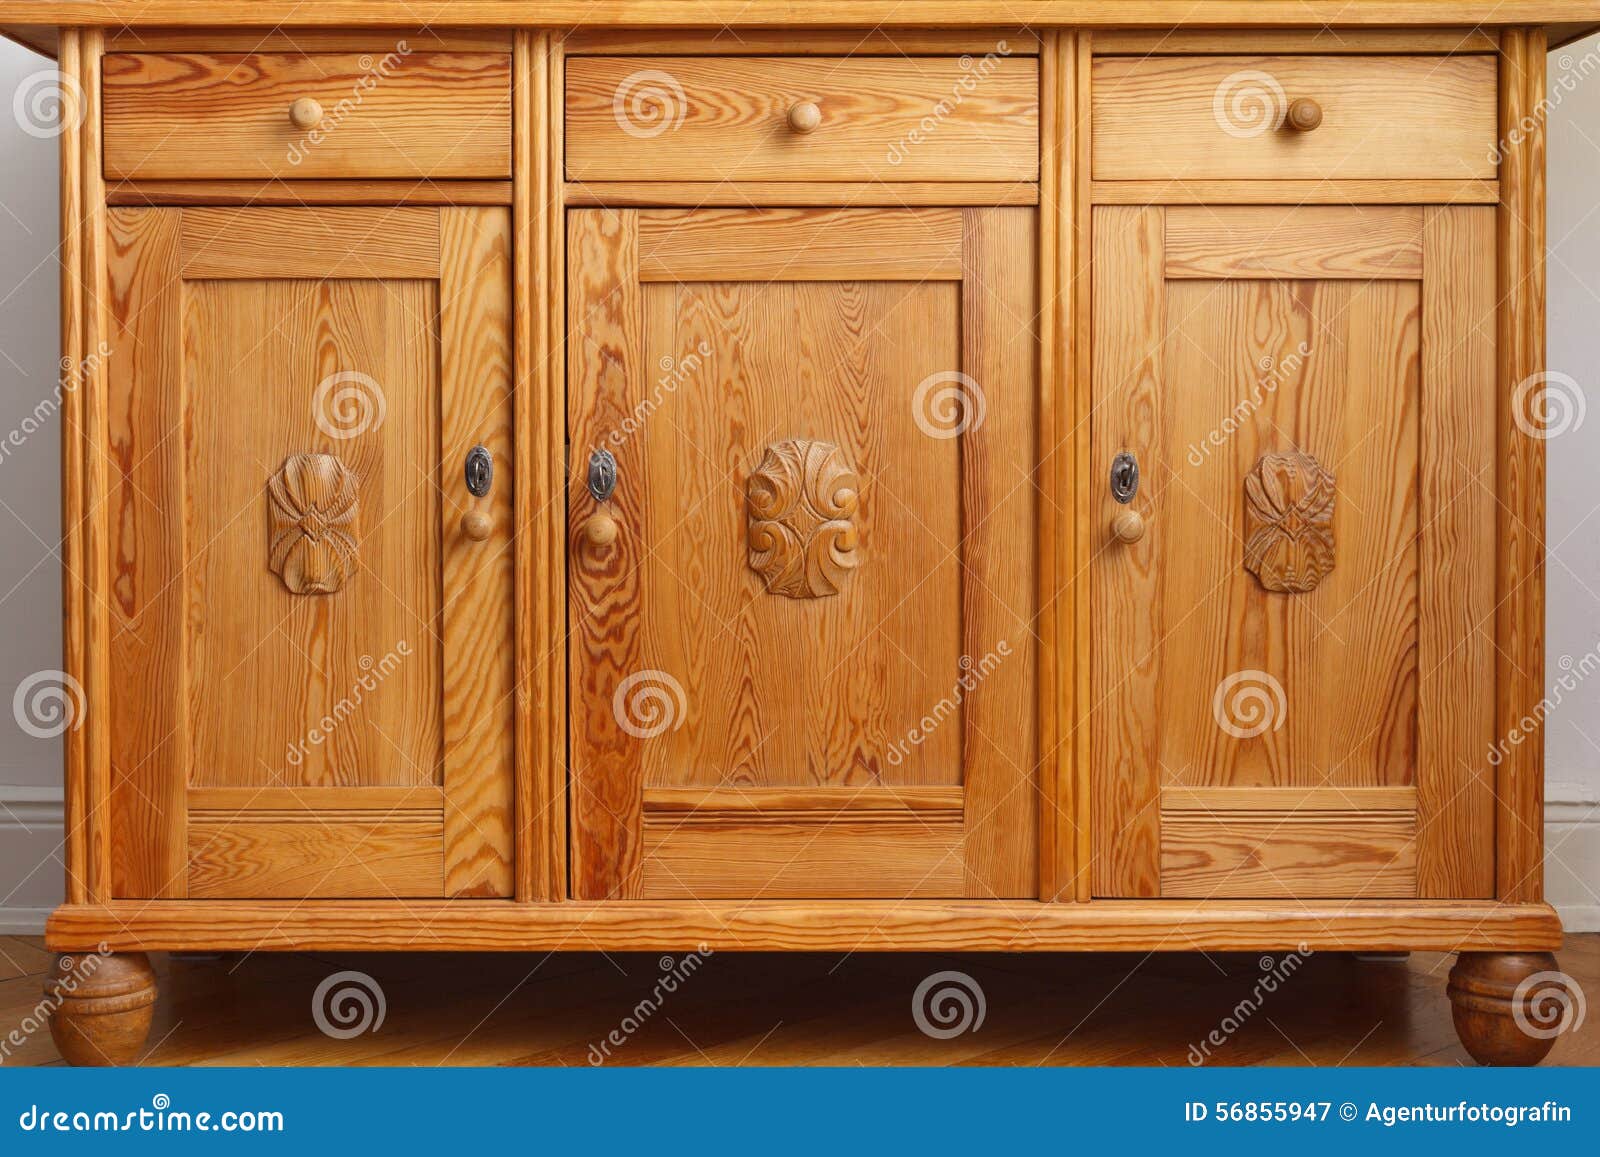 vintage sideboard cabinet drawers doors